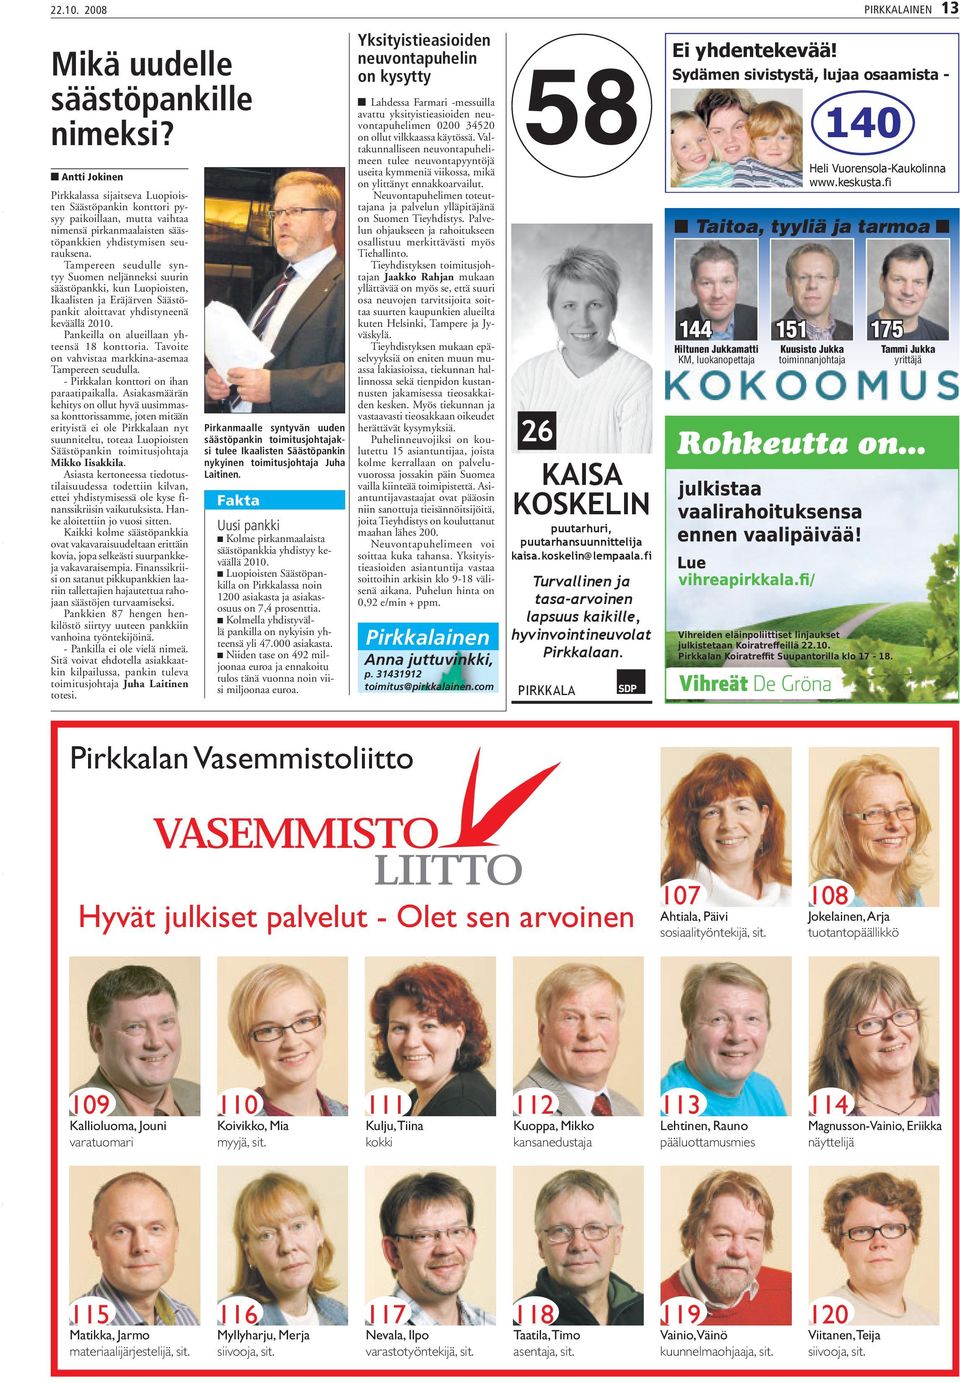 Tampereen seudulle syntyy Suomen neljänneksi suurin säästöpankki, kun Luopioisten, Ikaalisten ja Eräjärven Säästöpankit aloittavat yhdistyneenä keväällä 2010.